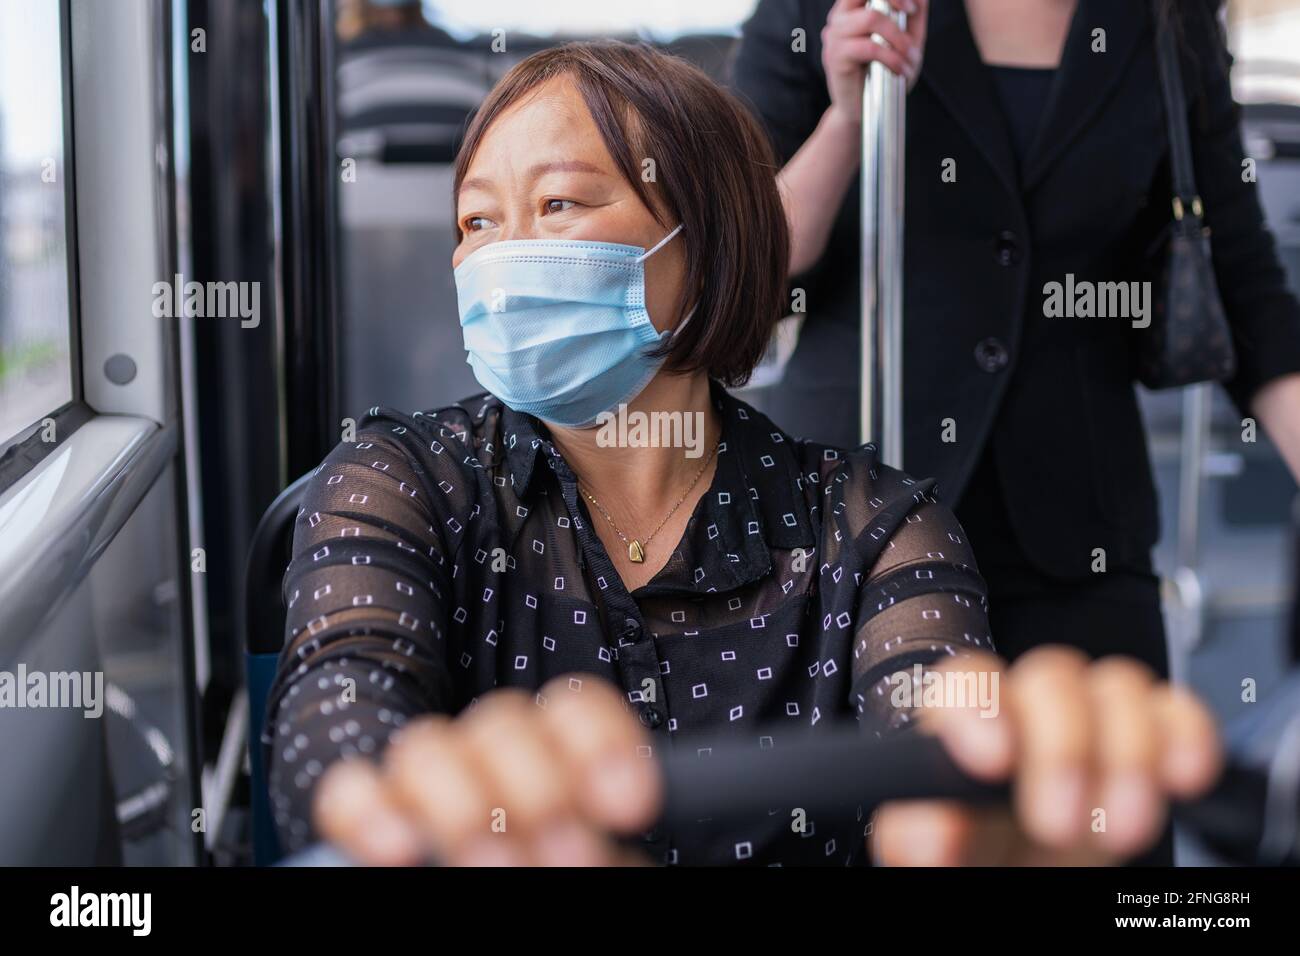 Femme asiatique assise dans un bus à l'extérieur : attention sélective. Concept de sécurité et de vacances après verrouillage. Banque D'Images